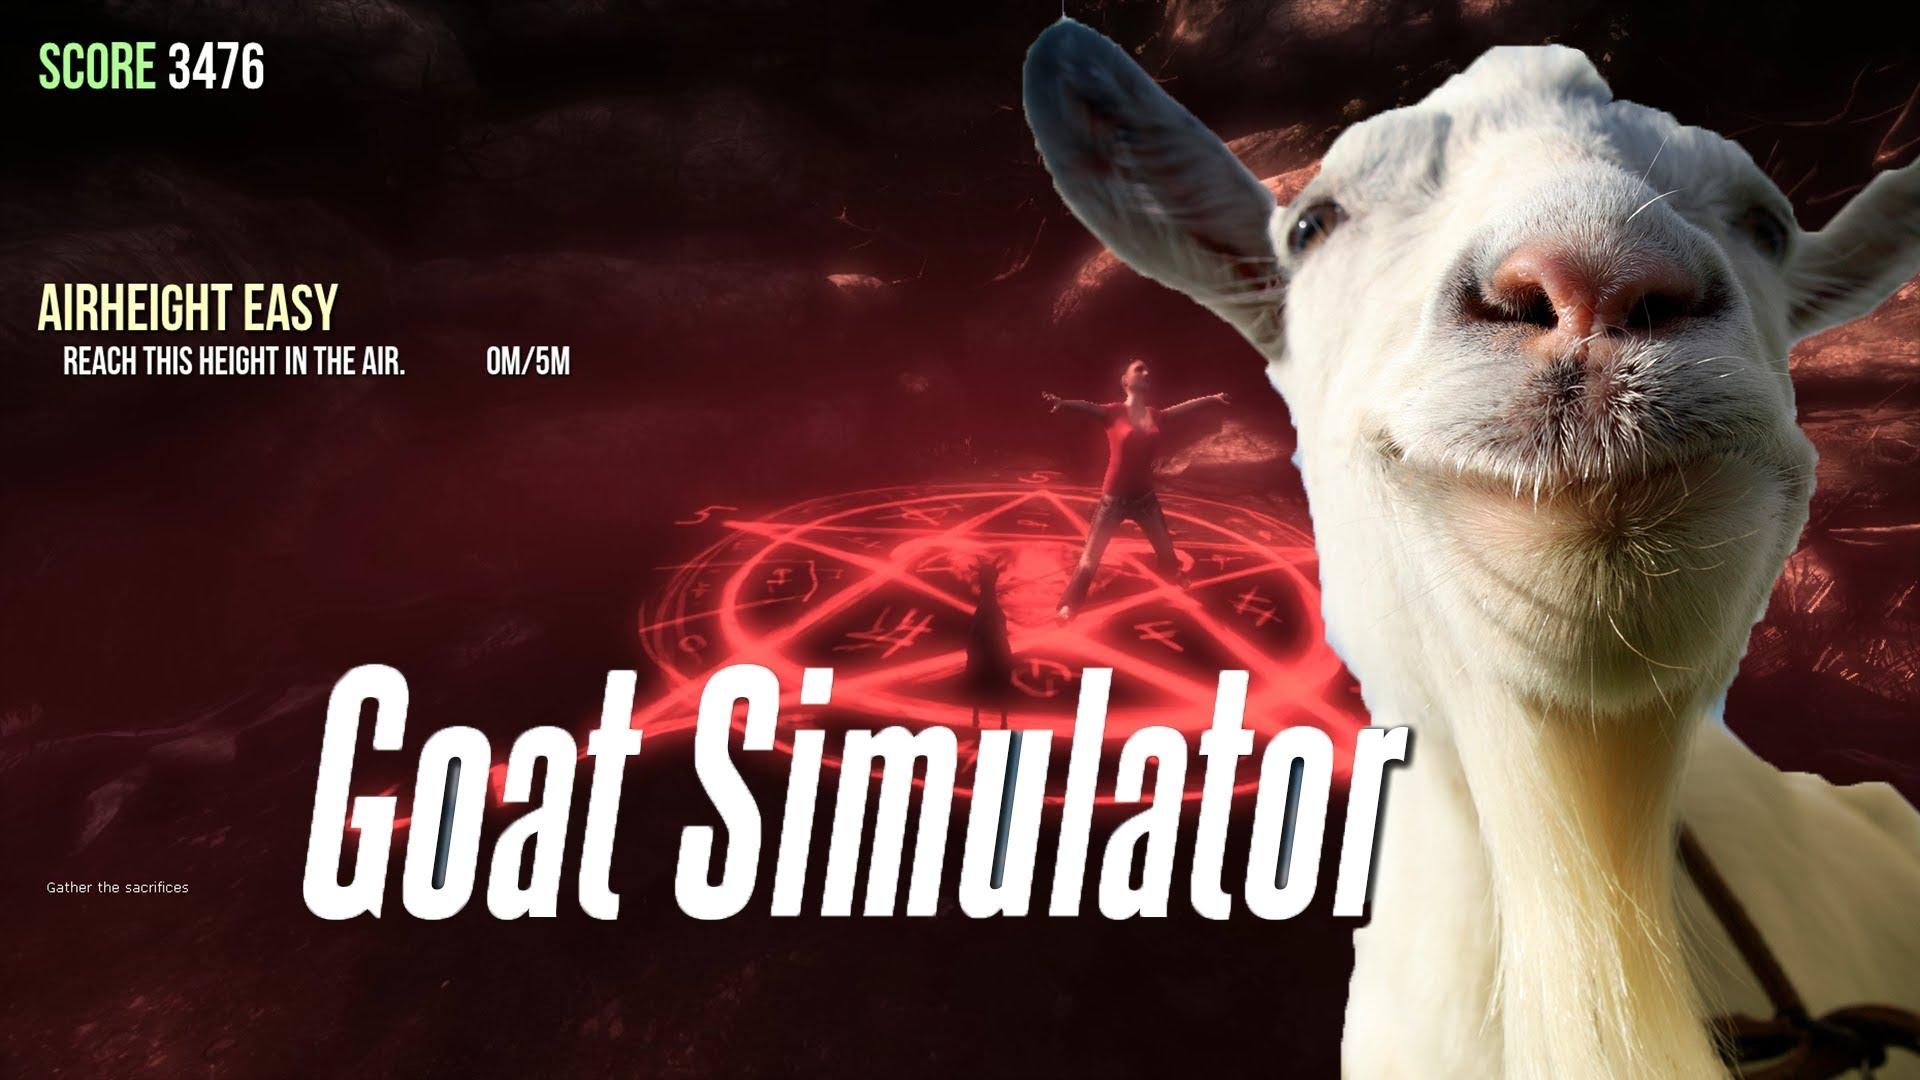 Goat Simulator Wallpaper 0.21 Mb. Wallperio.com™